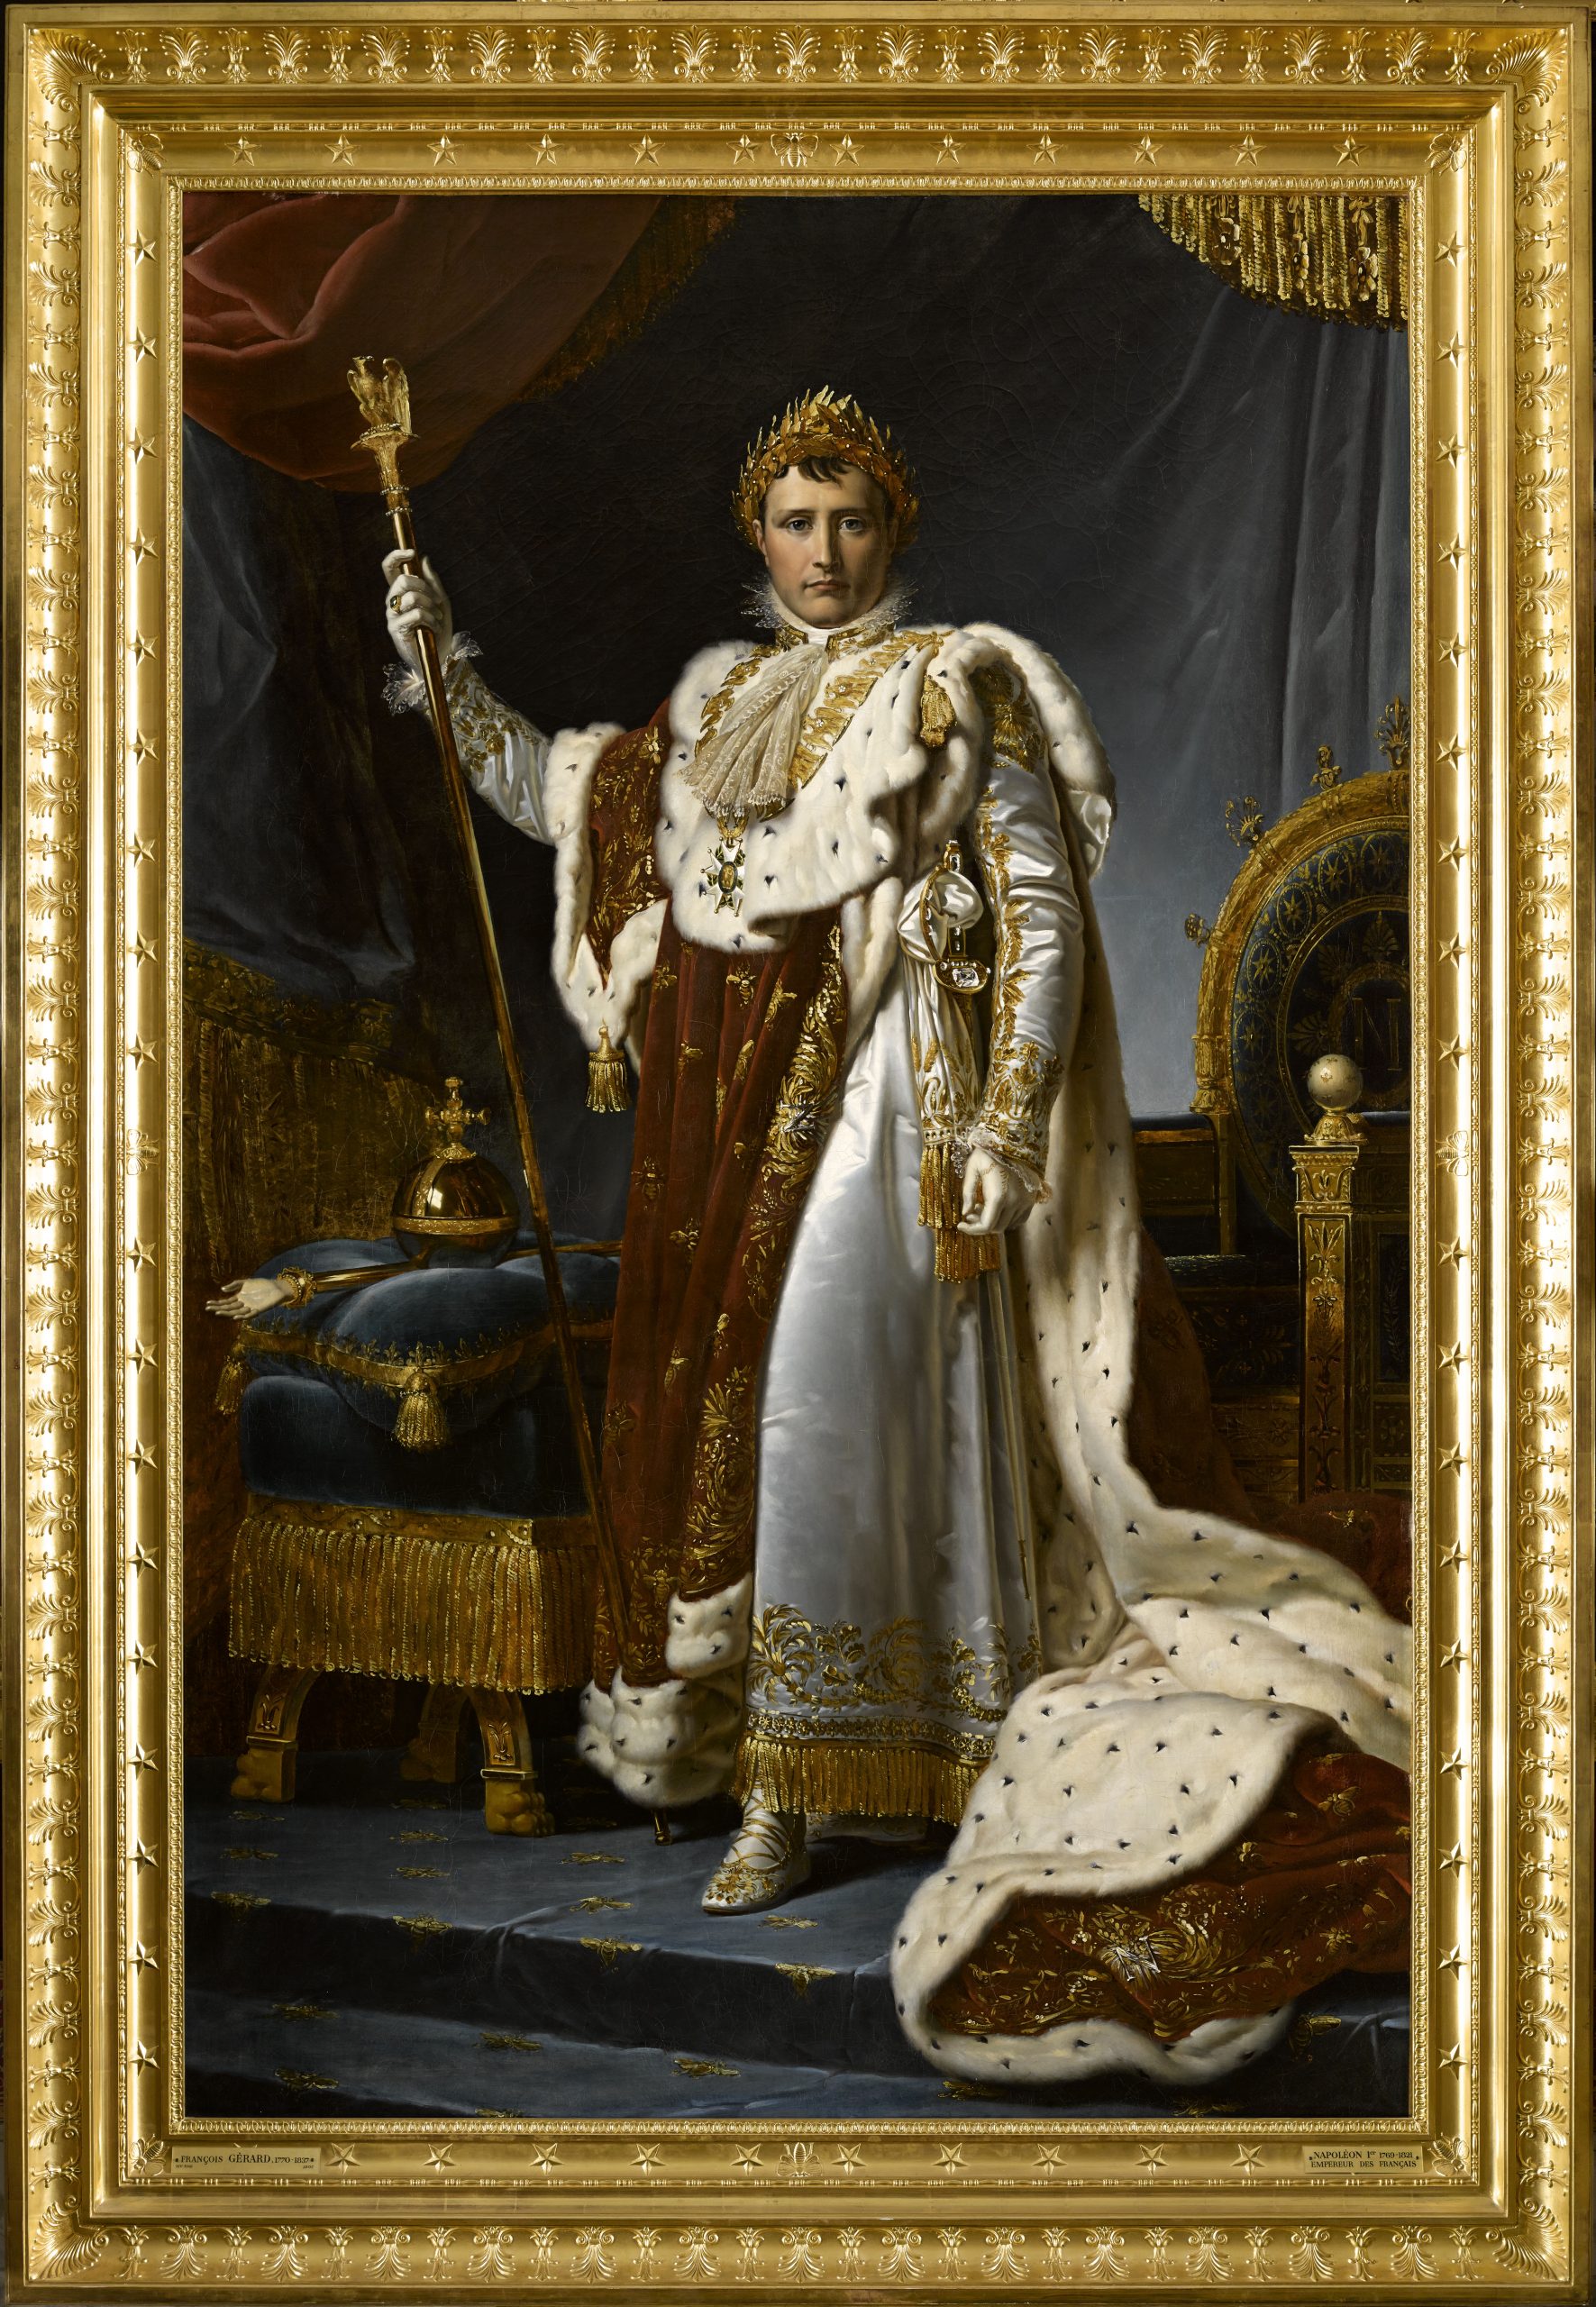 Napoleon Emperor of France by Francois Gerard, 1805